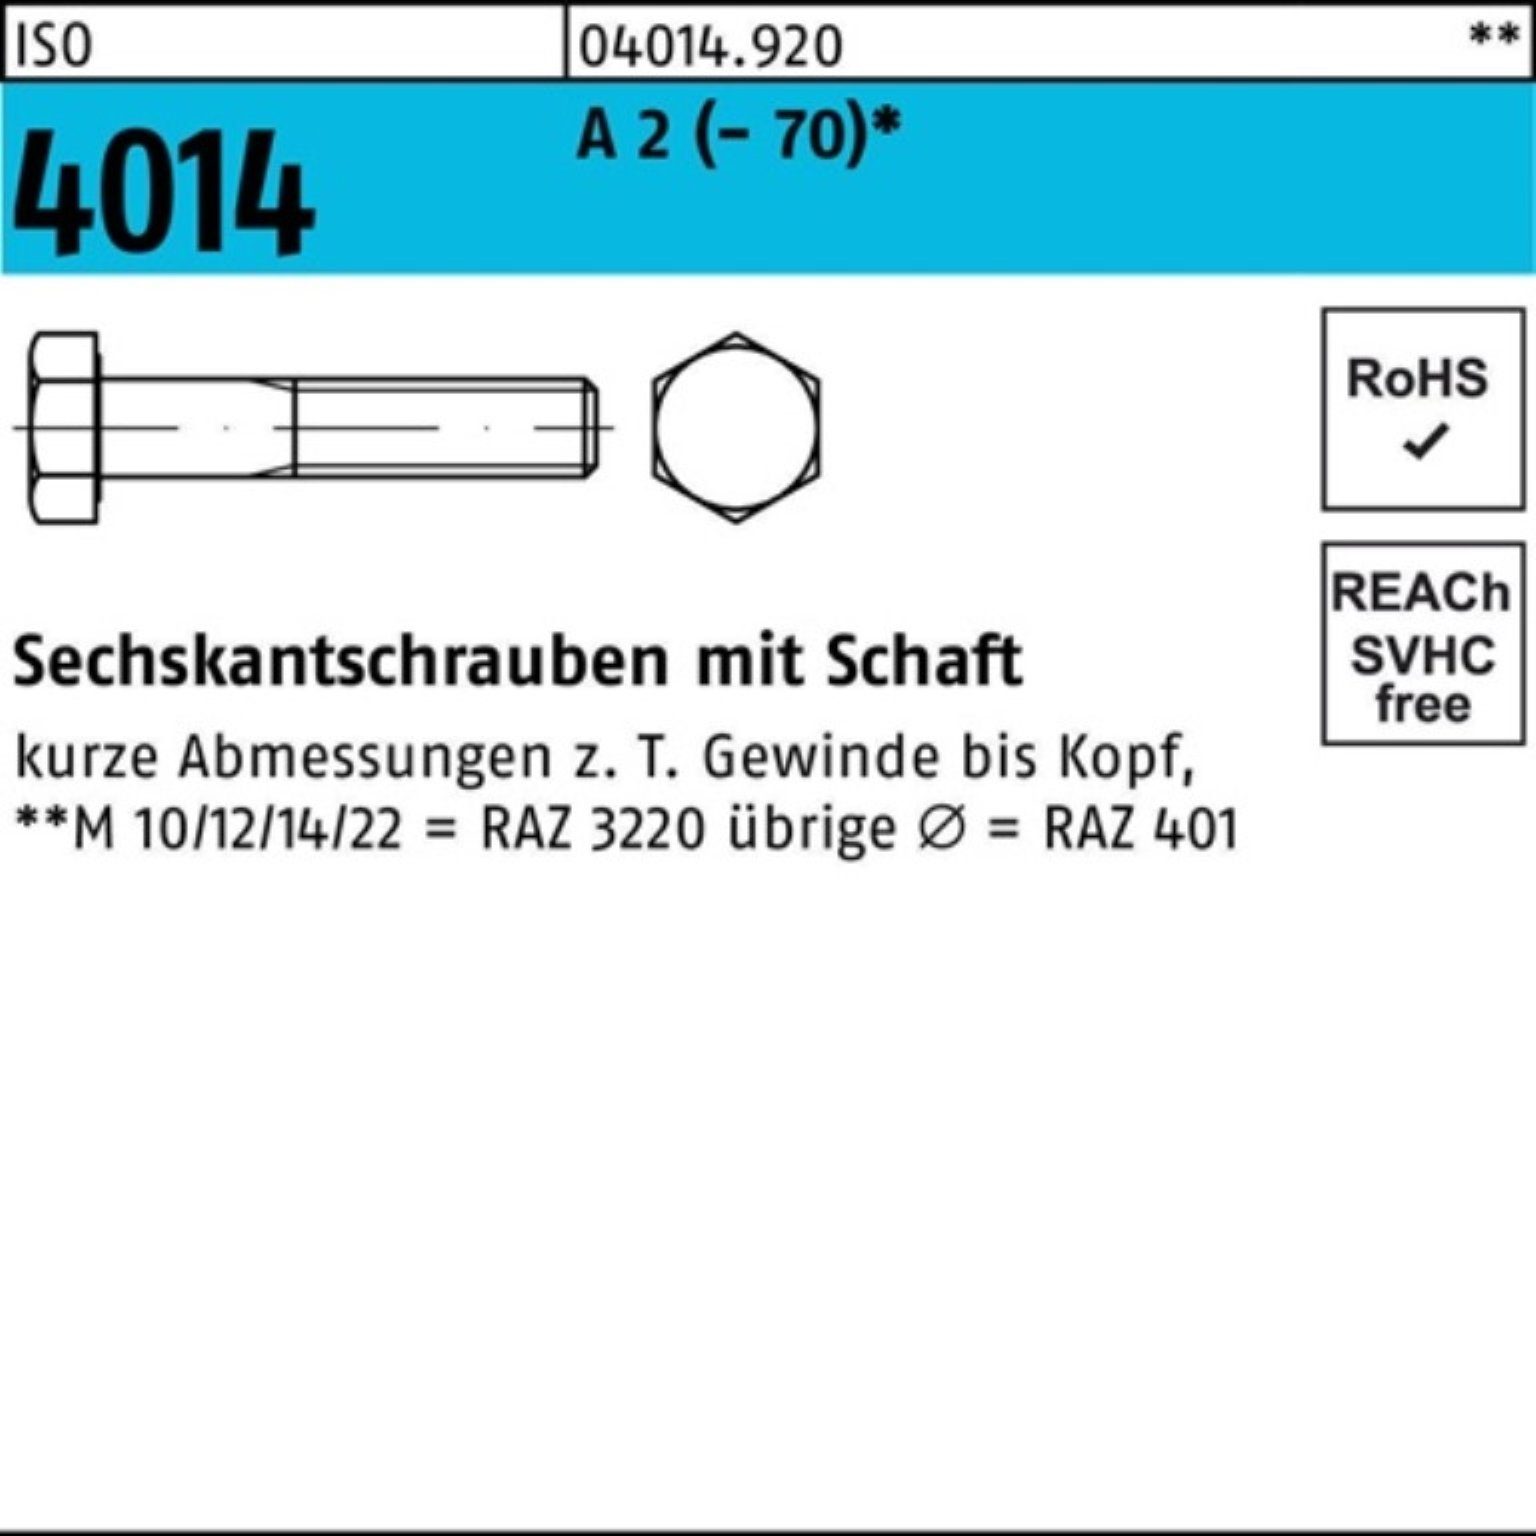 Bufab Sechskantschraube 100er Pack Sechskantschraube ISO 4014 Schaft M20x 120 A 2 (70) 1 St